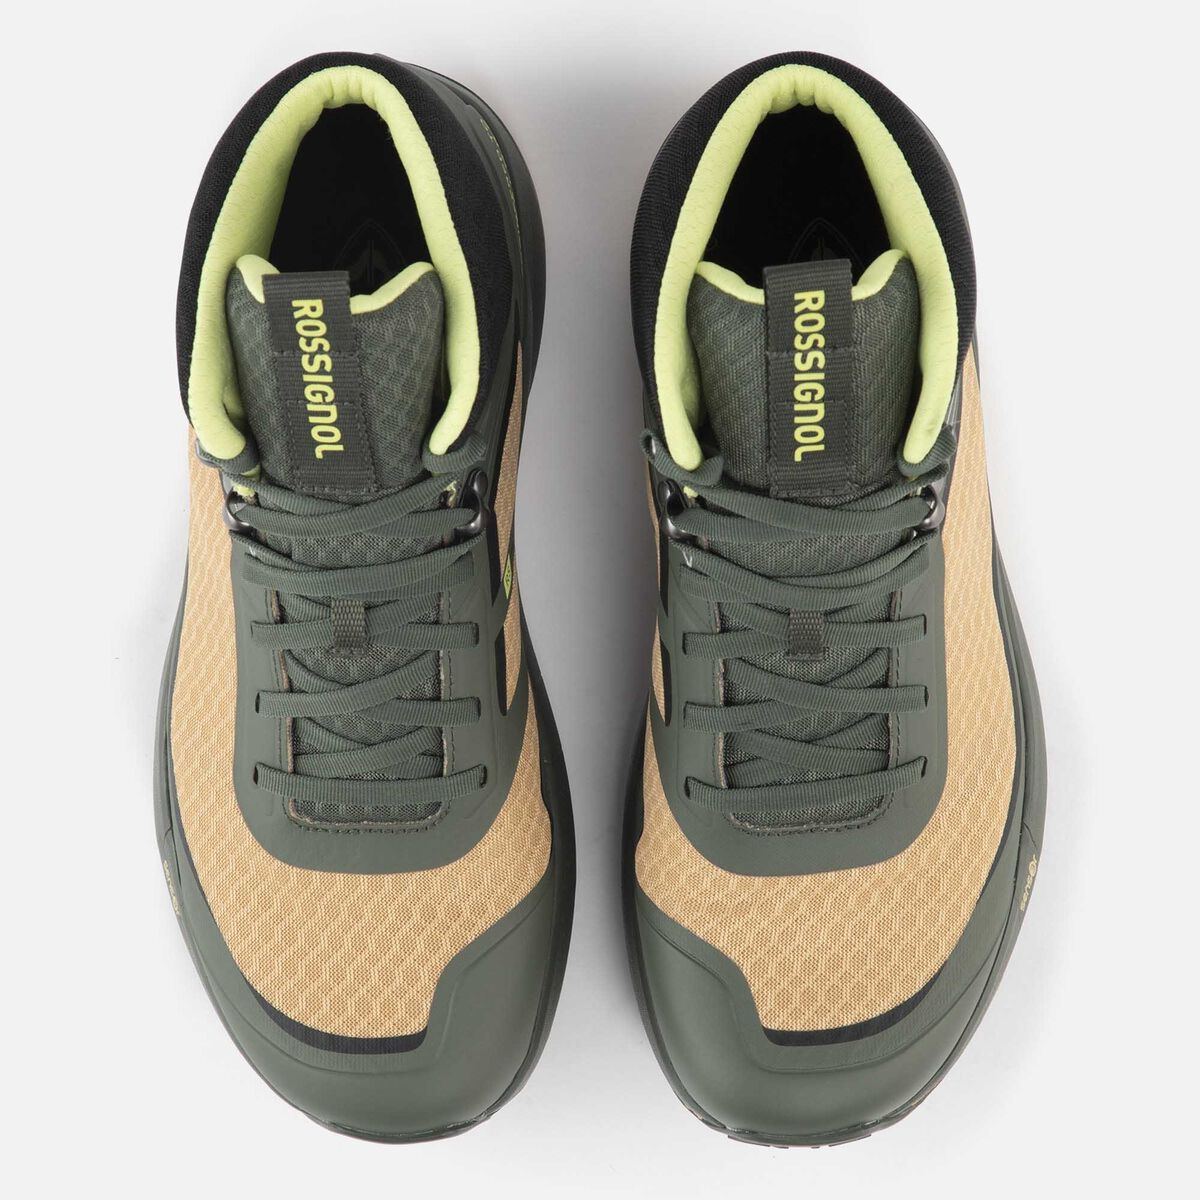 Chaussures de randonnée légères vertes homme